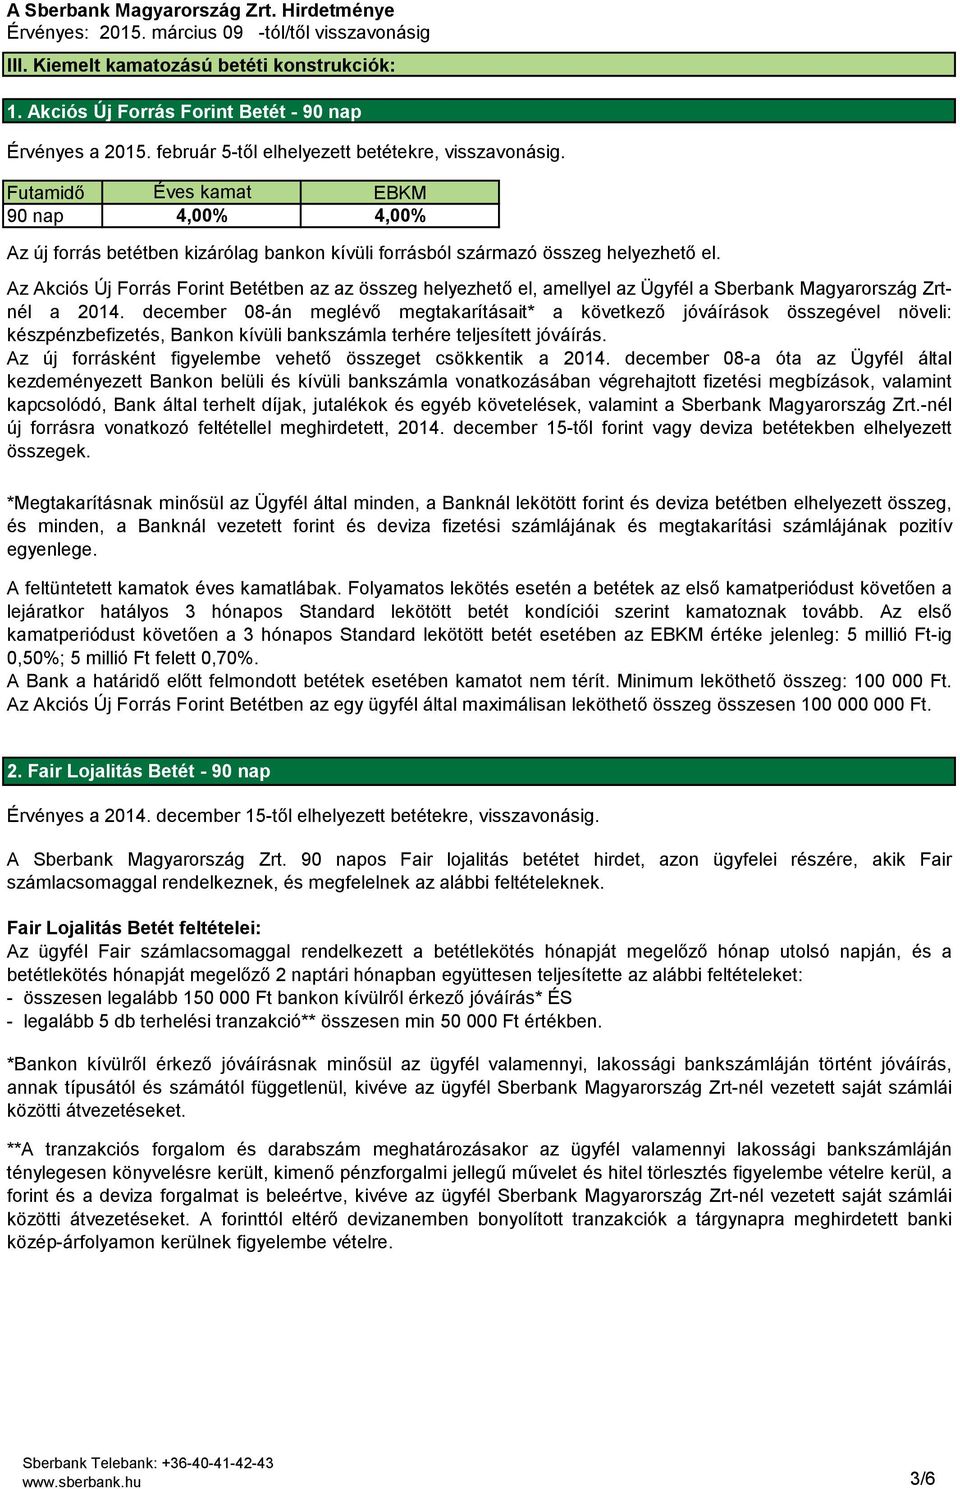 Az Akciós Új Forrás Forint Betétben az az összeg helyezhető el, amellyel az Ügyfél a Sberbank Magyarország Zrtnél a 2014.